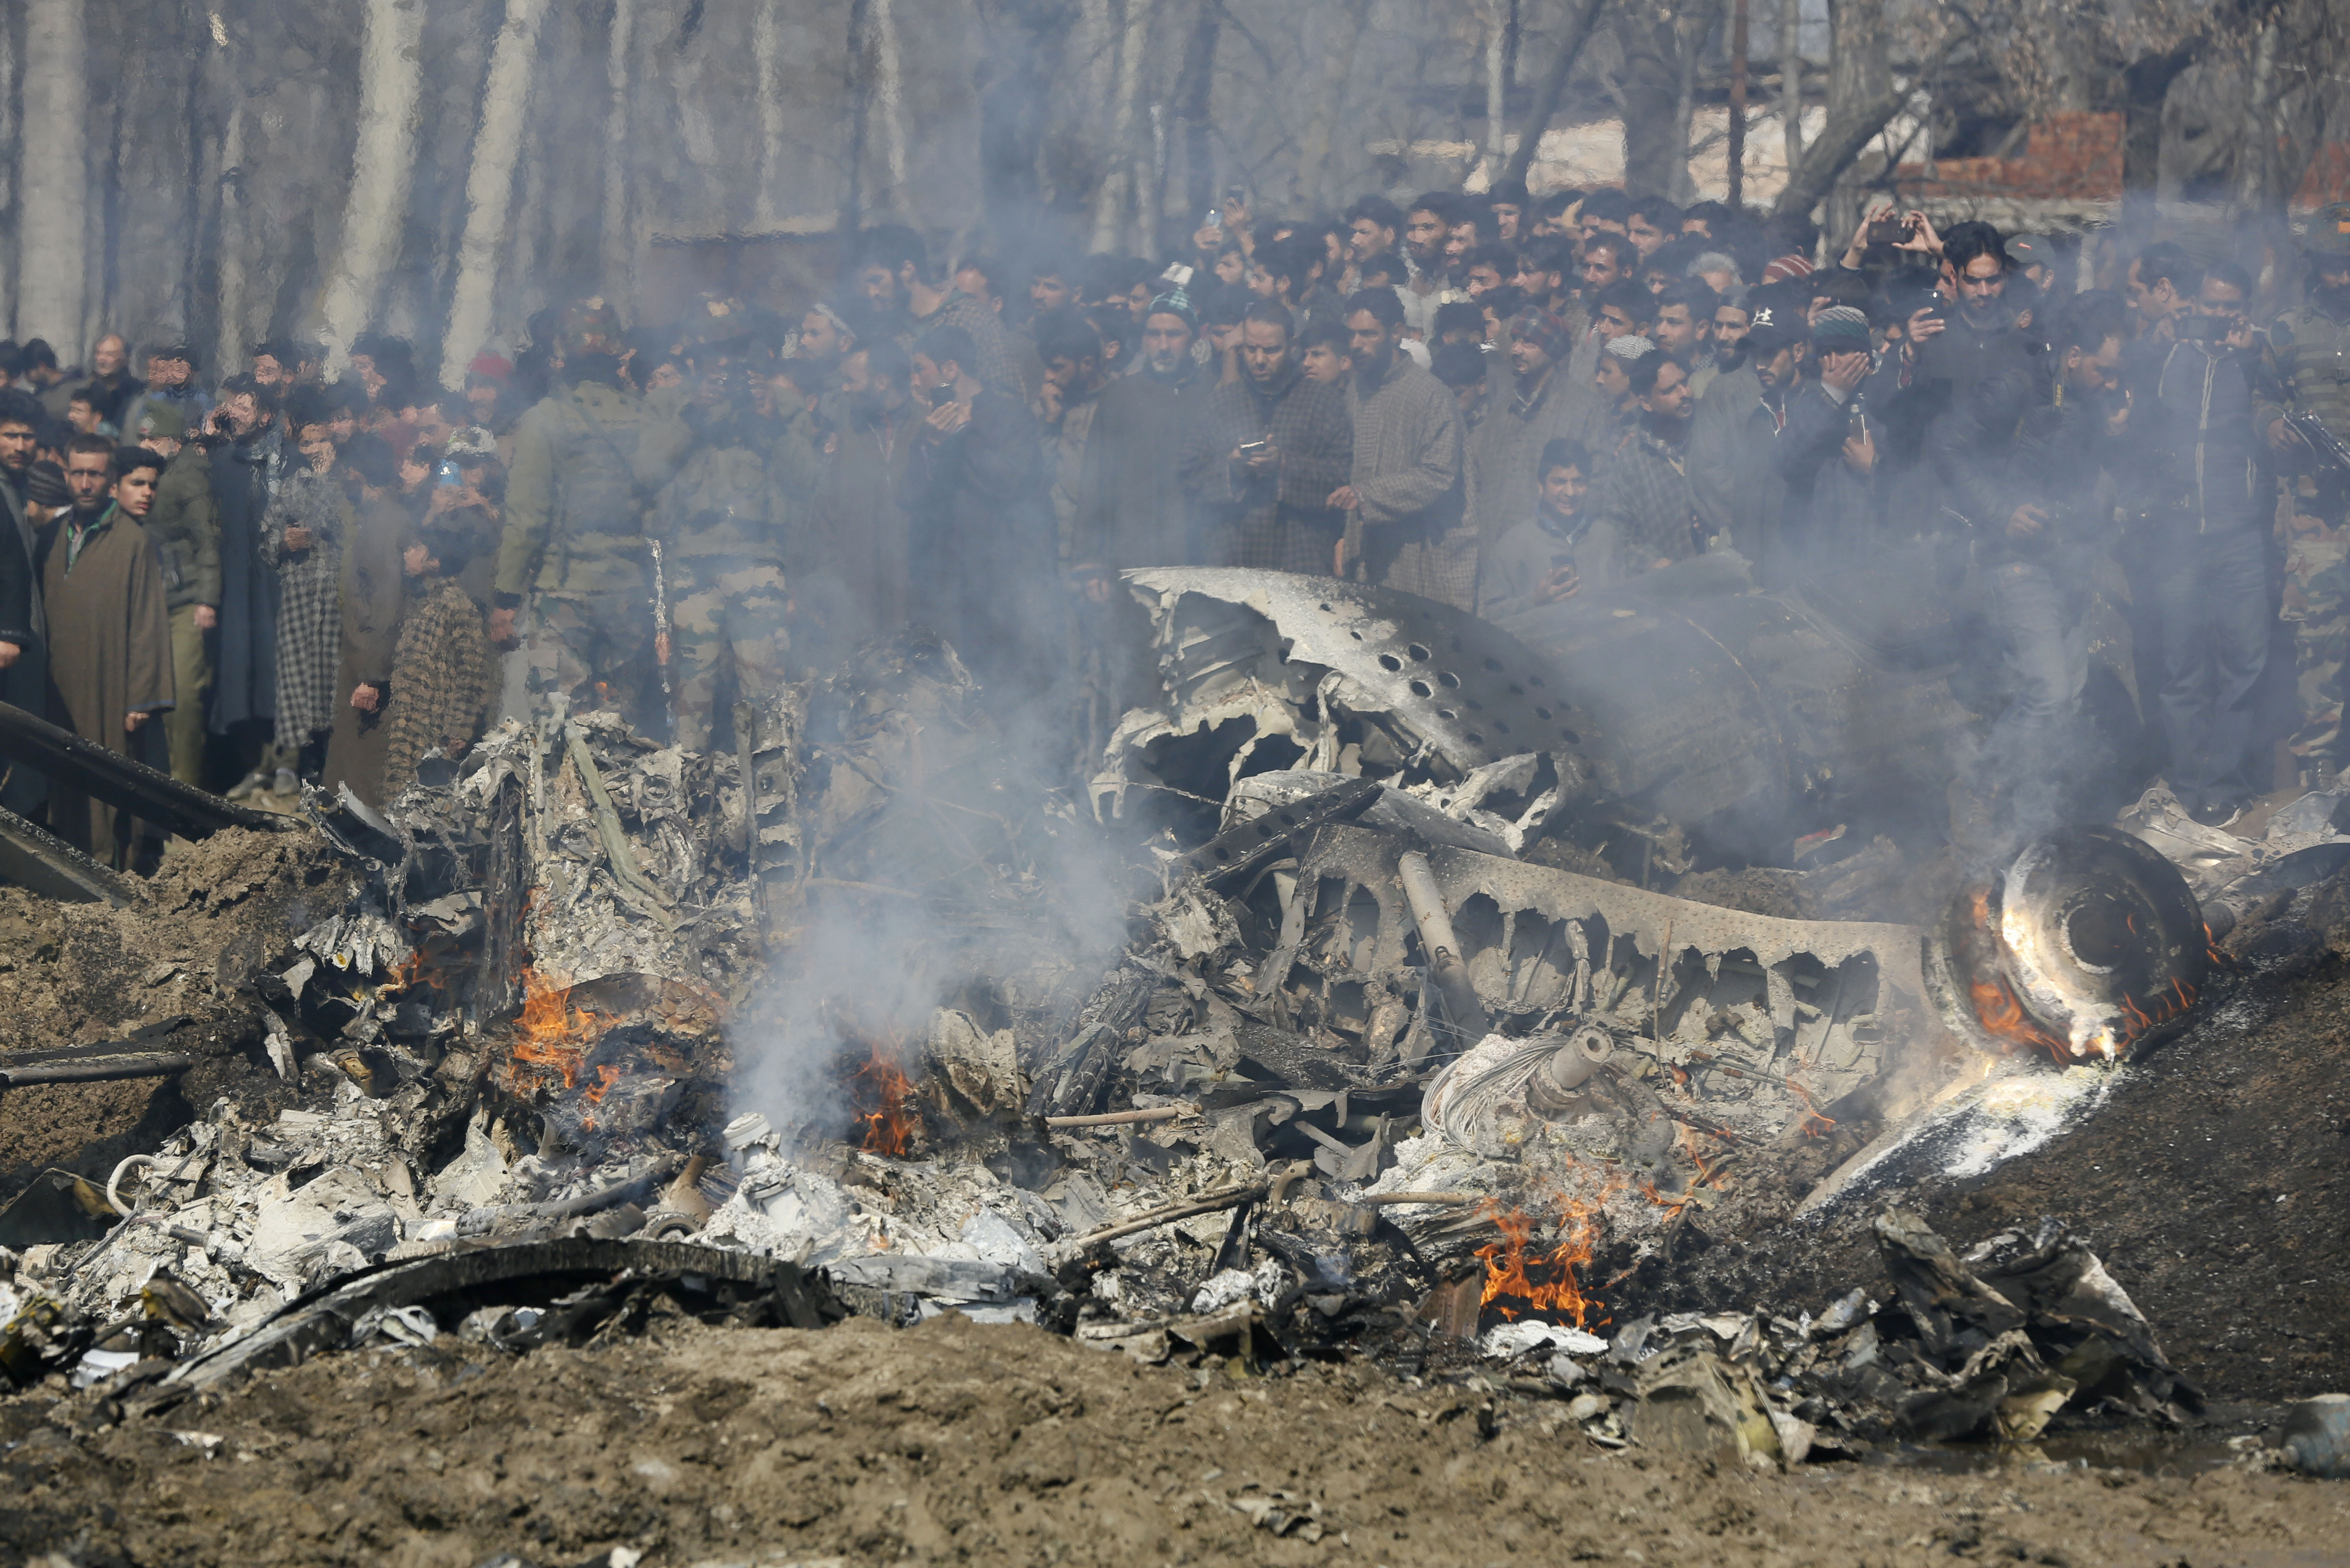 Индия. Местные жители на месте катастрофы самолета ВВС Индии, потерпевшего крушение в индийском штате Джамму и Кашмир. Два пилота не успели катапультироваться и погибли.